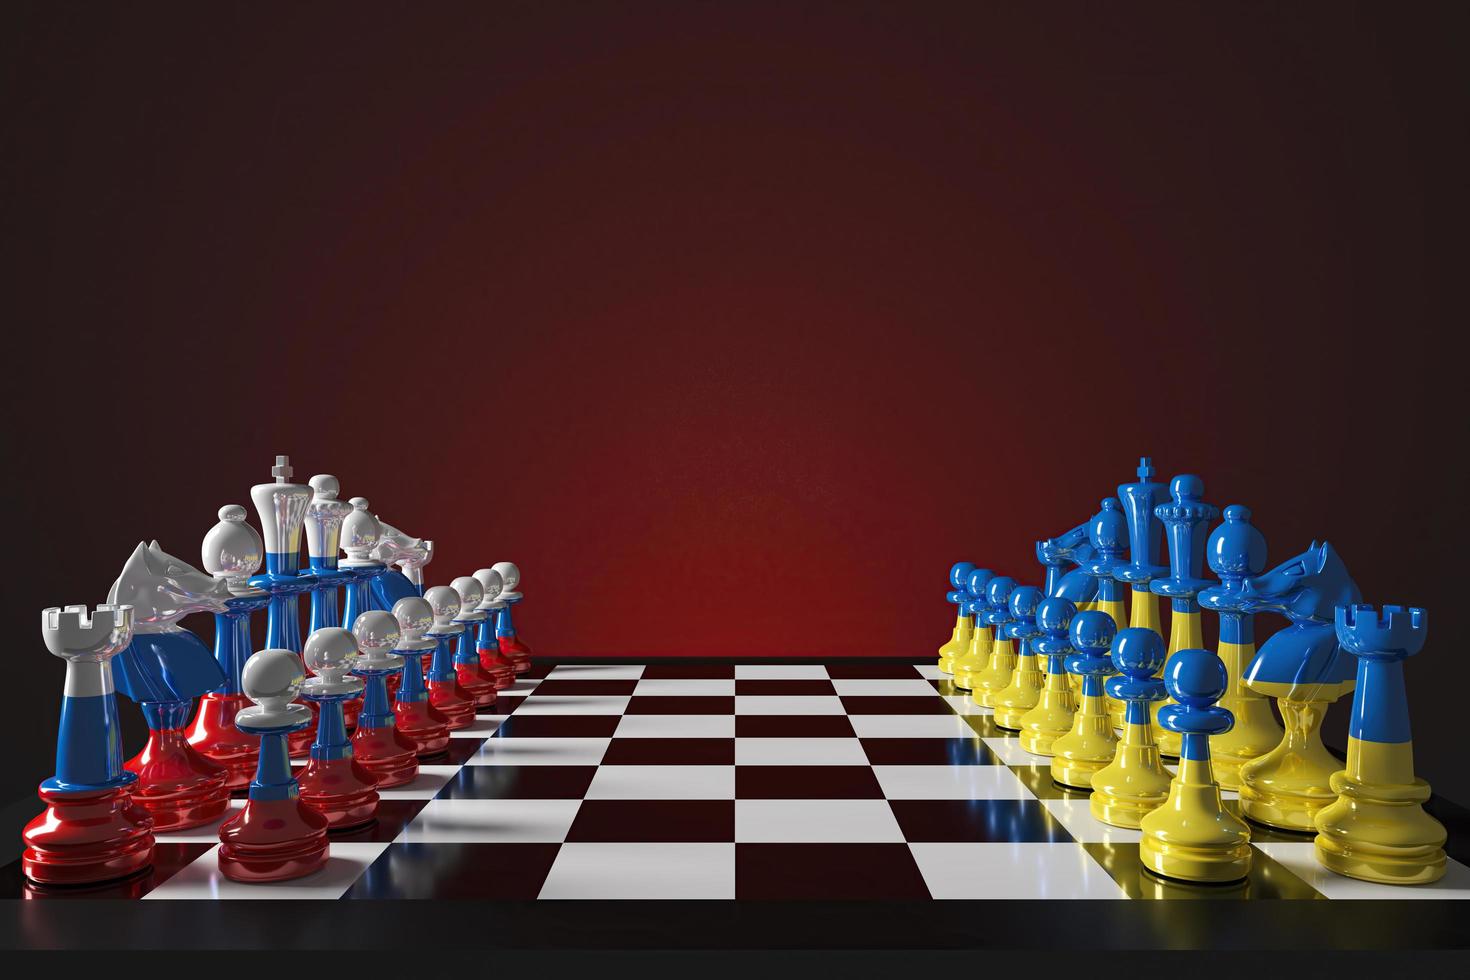 jeu d'échecs les pièces sont colorées avec des motifs ukrainiens et russes, reflétant le jeu politique international. rendu 3d photo